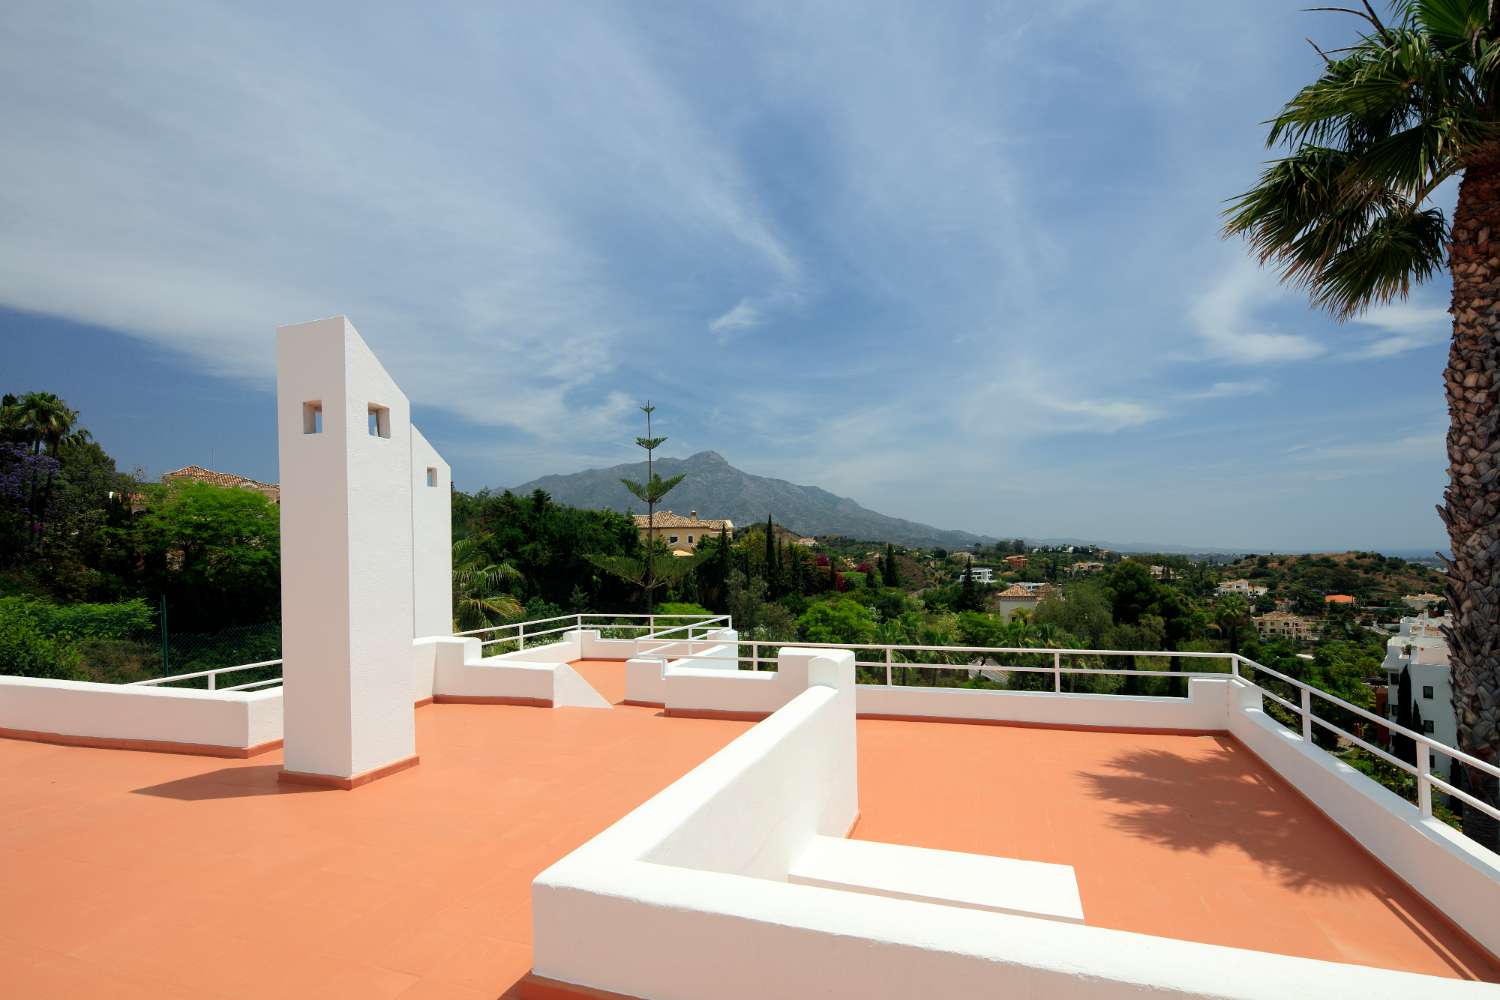 Villa till salu i La Quinta, Benahavis.  Fantastisk utsikt över La Concha, Medelhavet och Afrikas kust.